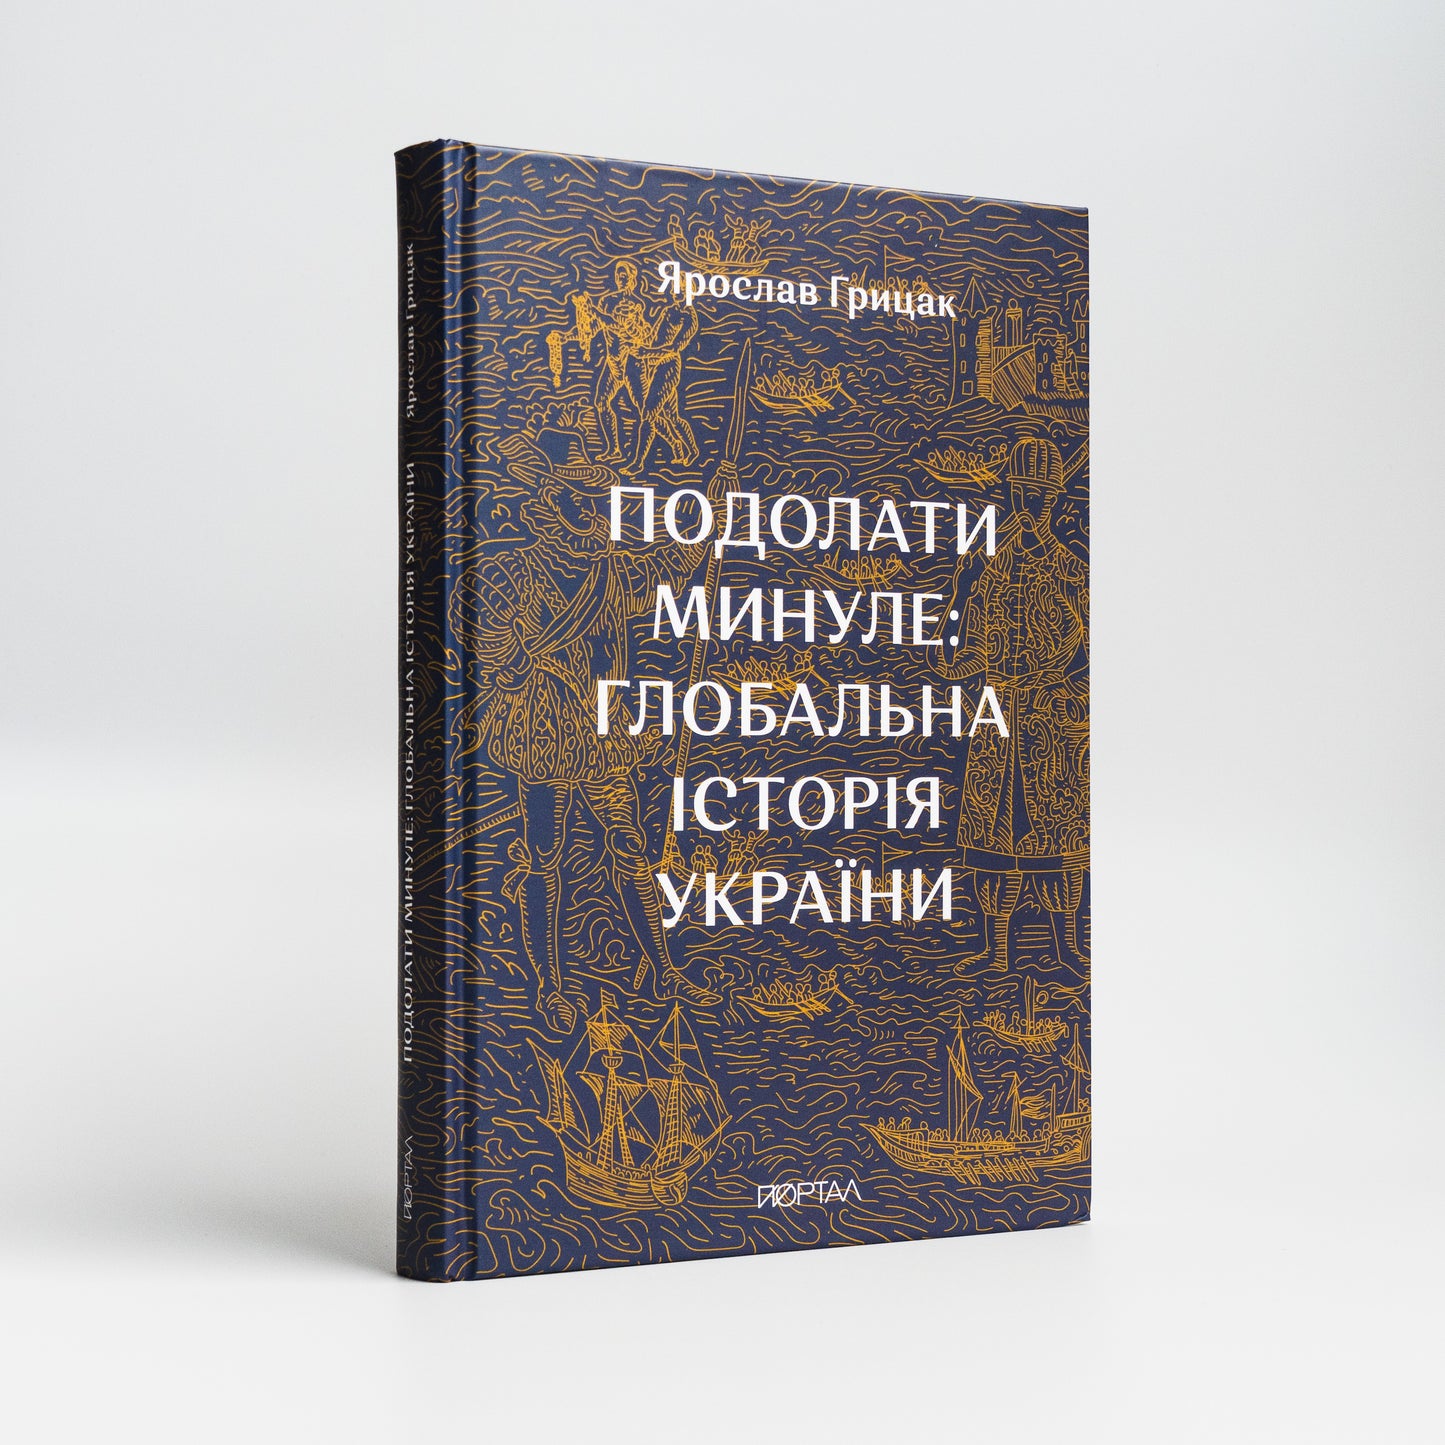 Передня палітурка книжки Подолати минуле: глобальна історія України